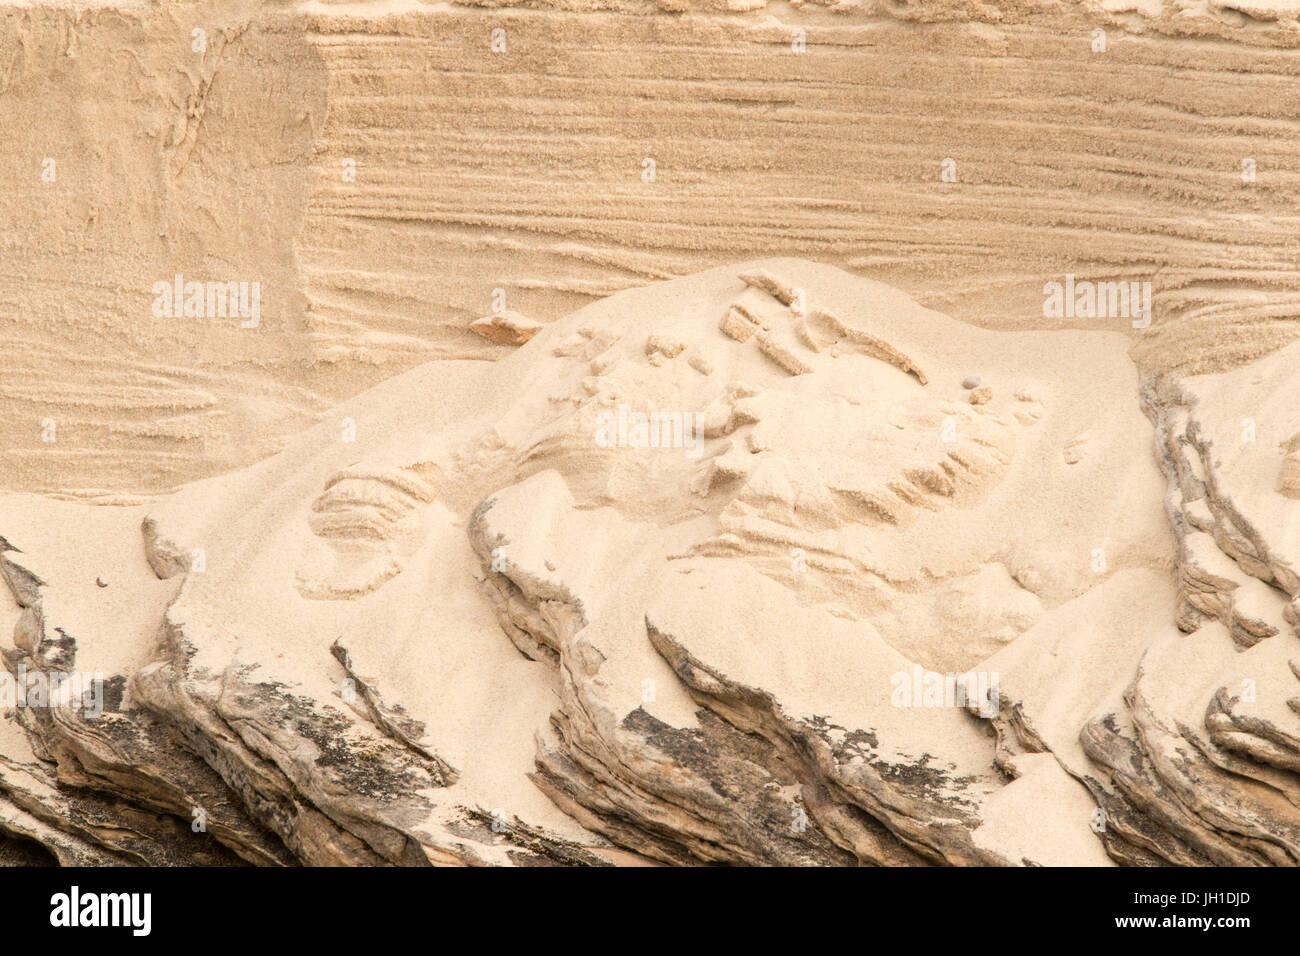 Vague de sable érodés ressemblant à Visages à Miner's Beach de Pictured Rocks National Lakeshore à Munsing, Michigan Banque D'Images